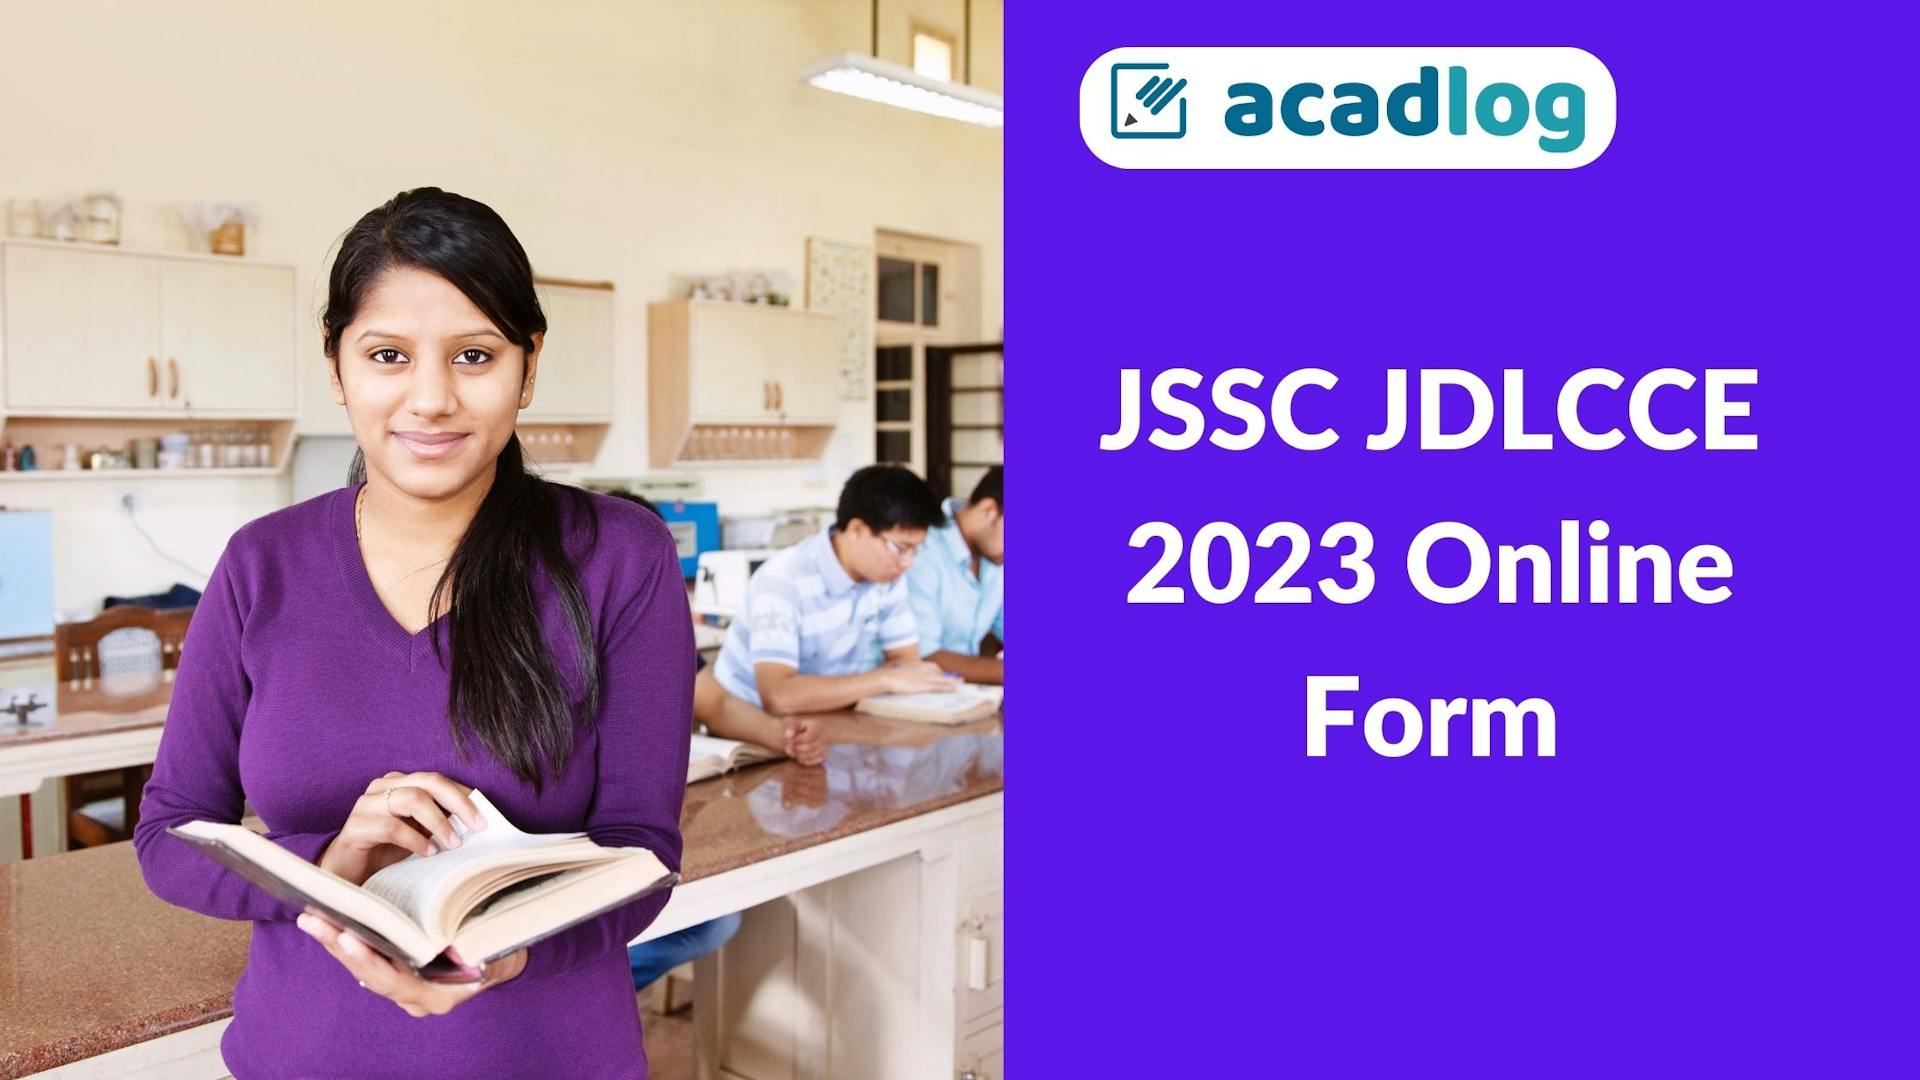 JSSC JDLCCE 2023 Online Form